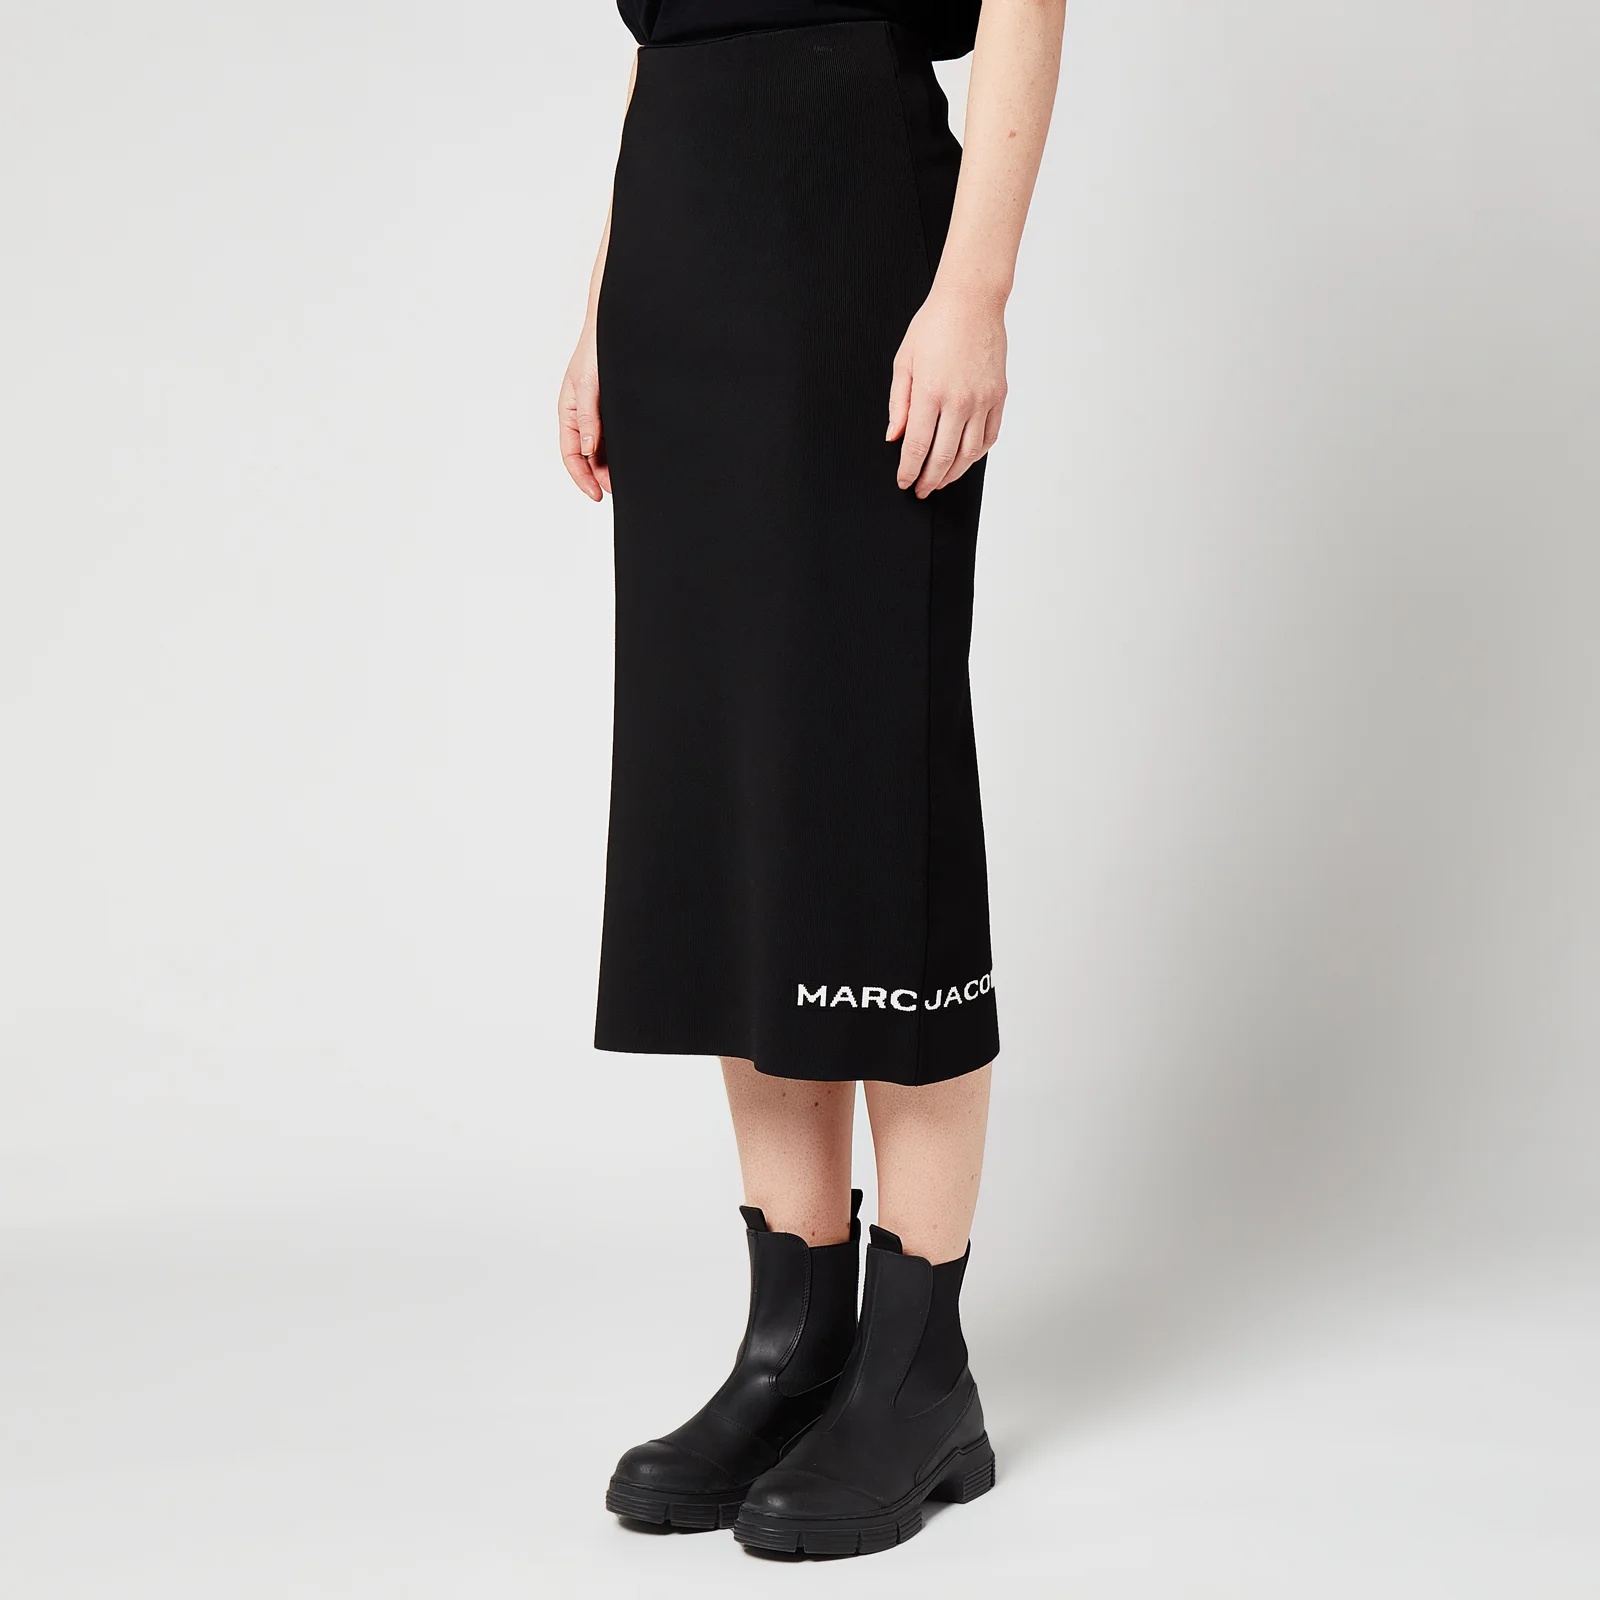 Marc Jacobs Women's The Tube Skirt - Black Image 1